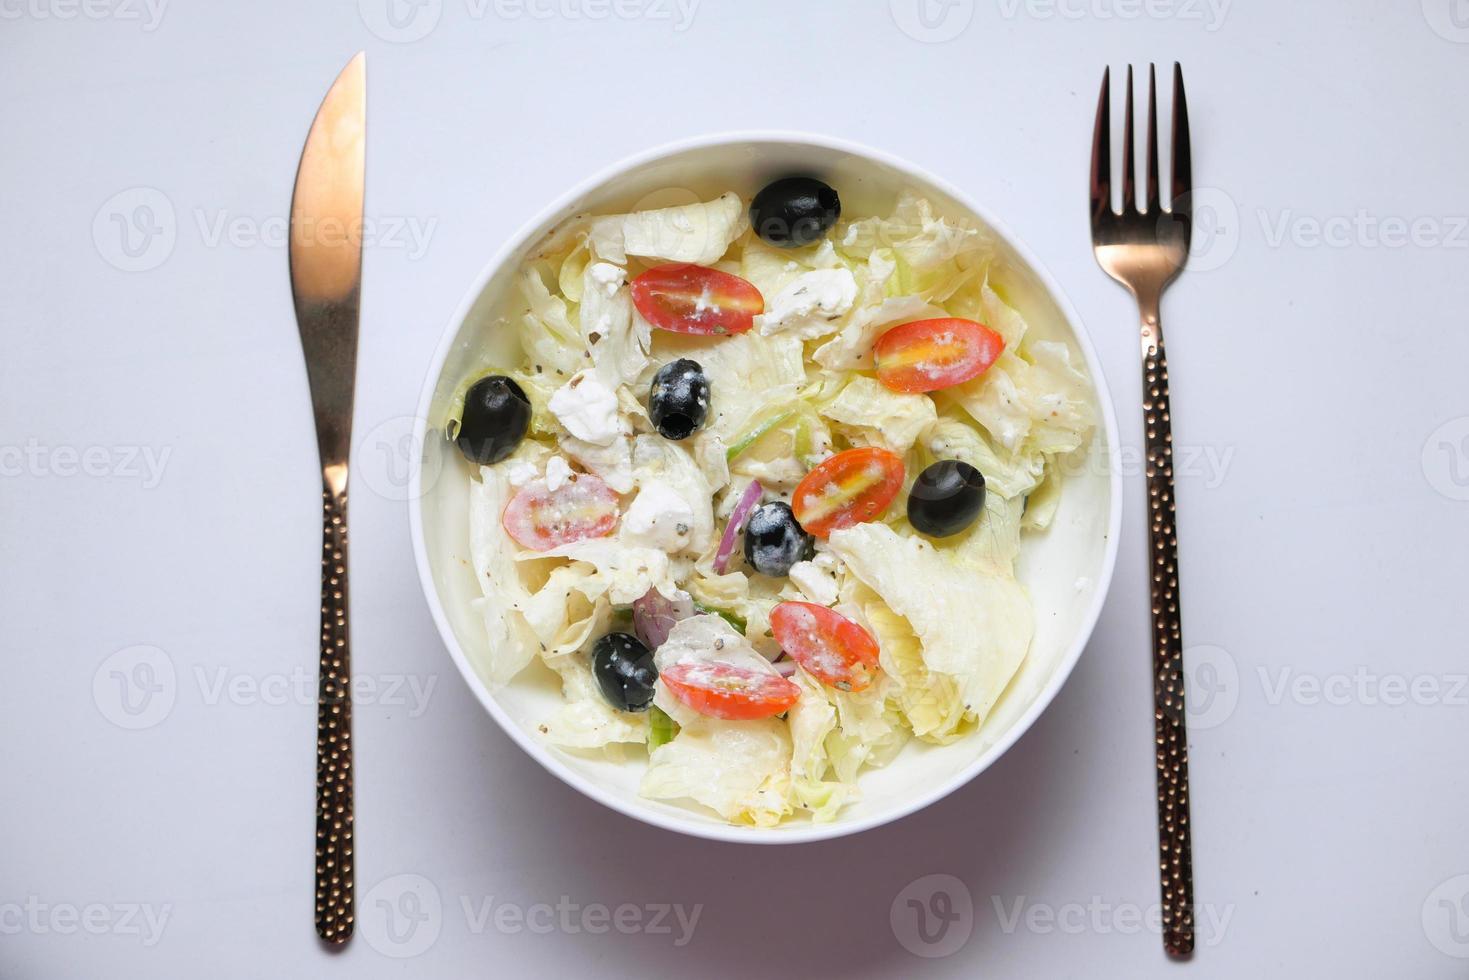 close-up van Griekse salade in een kom foto